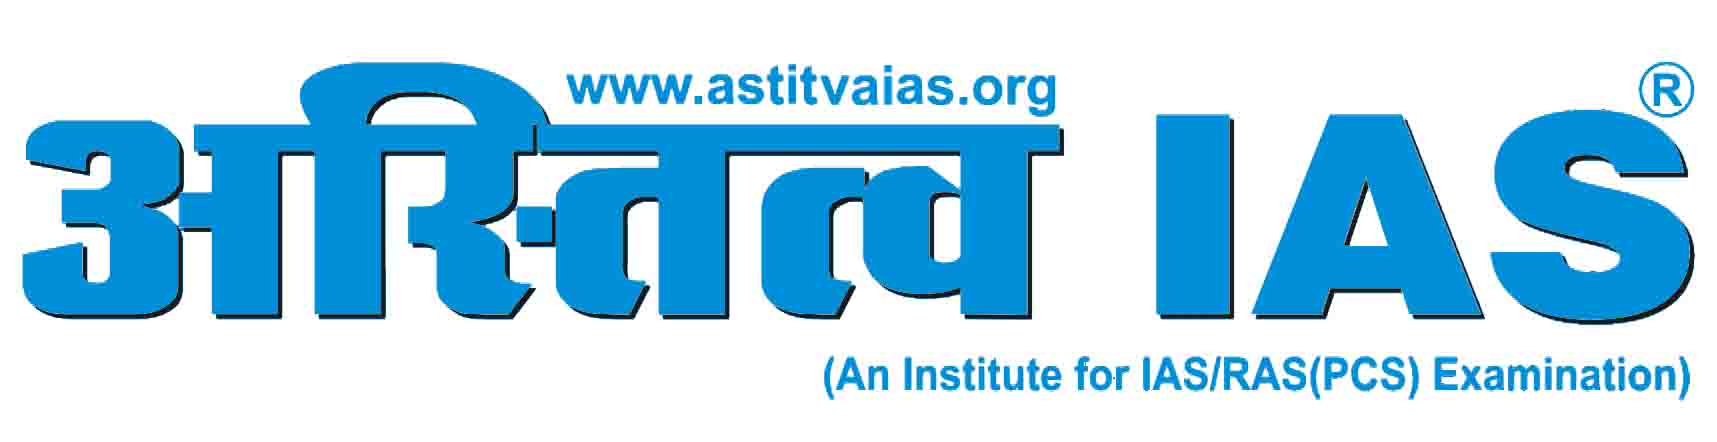 ASTITVA logo